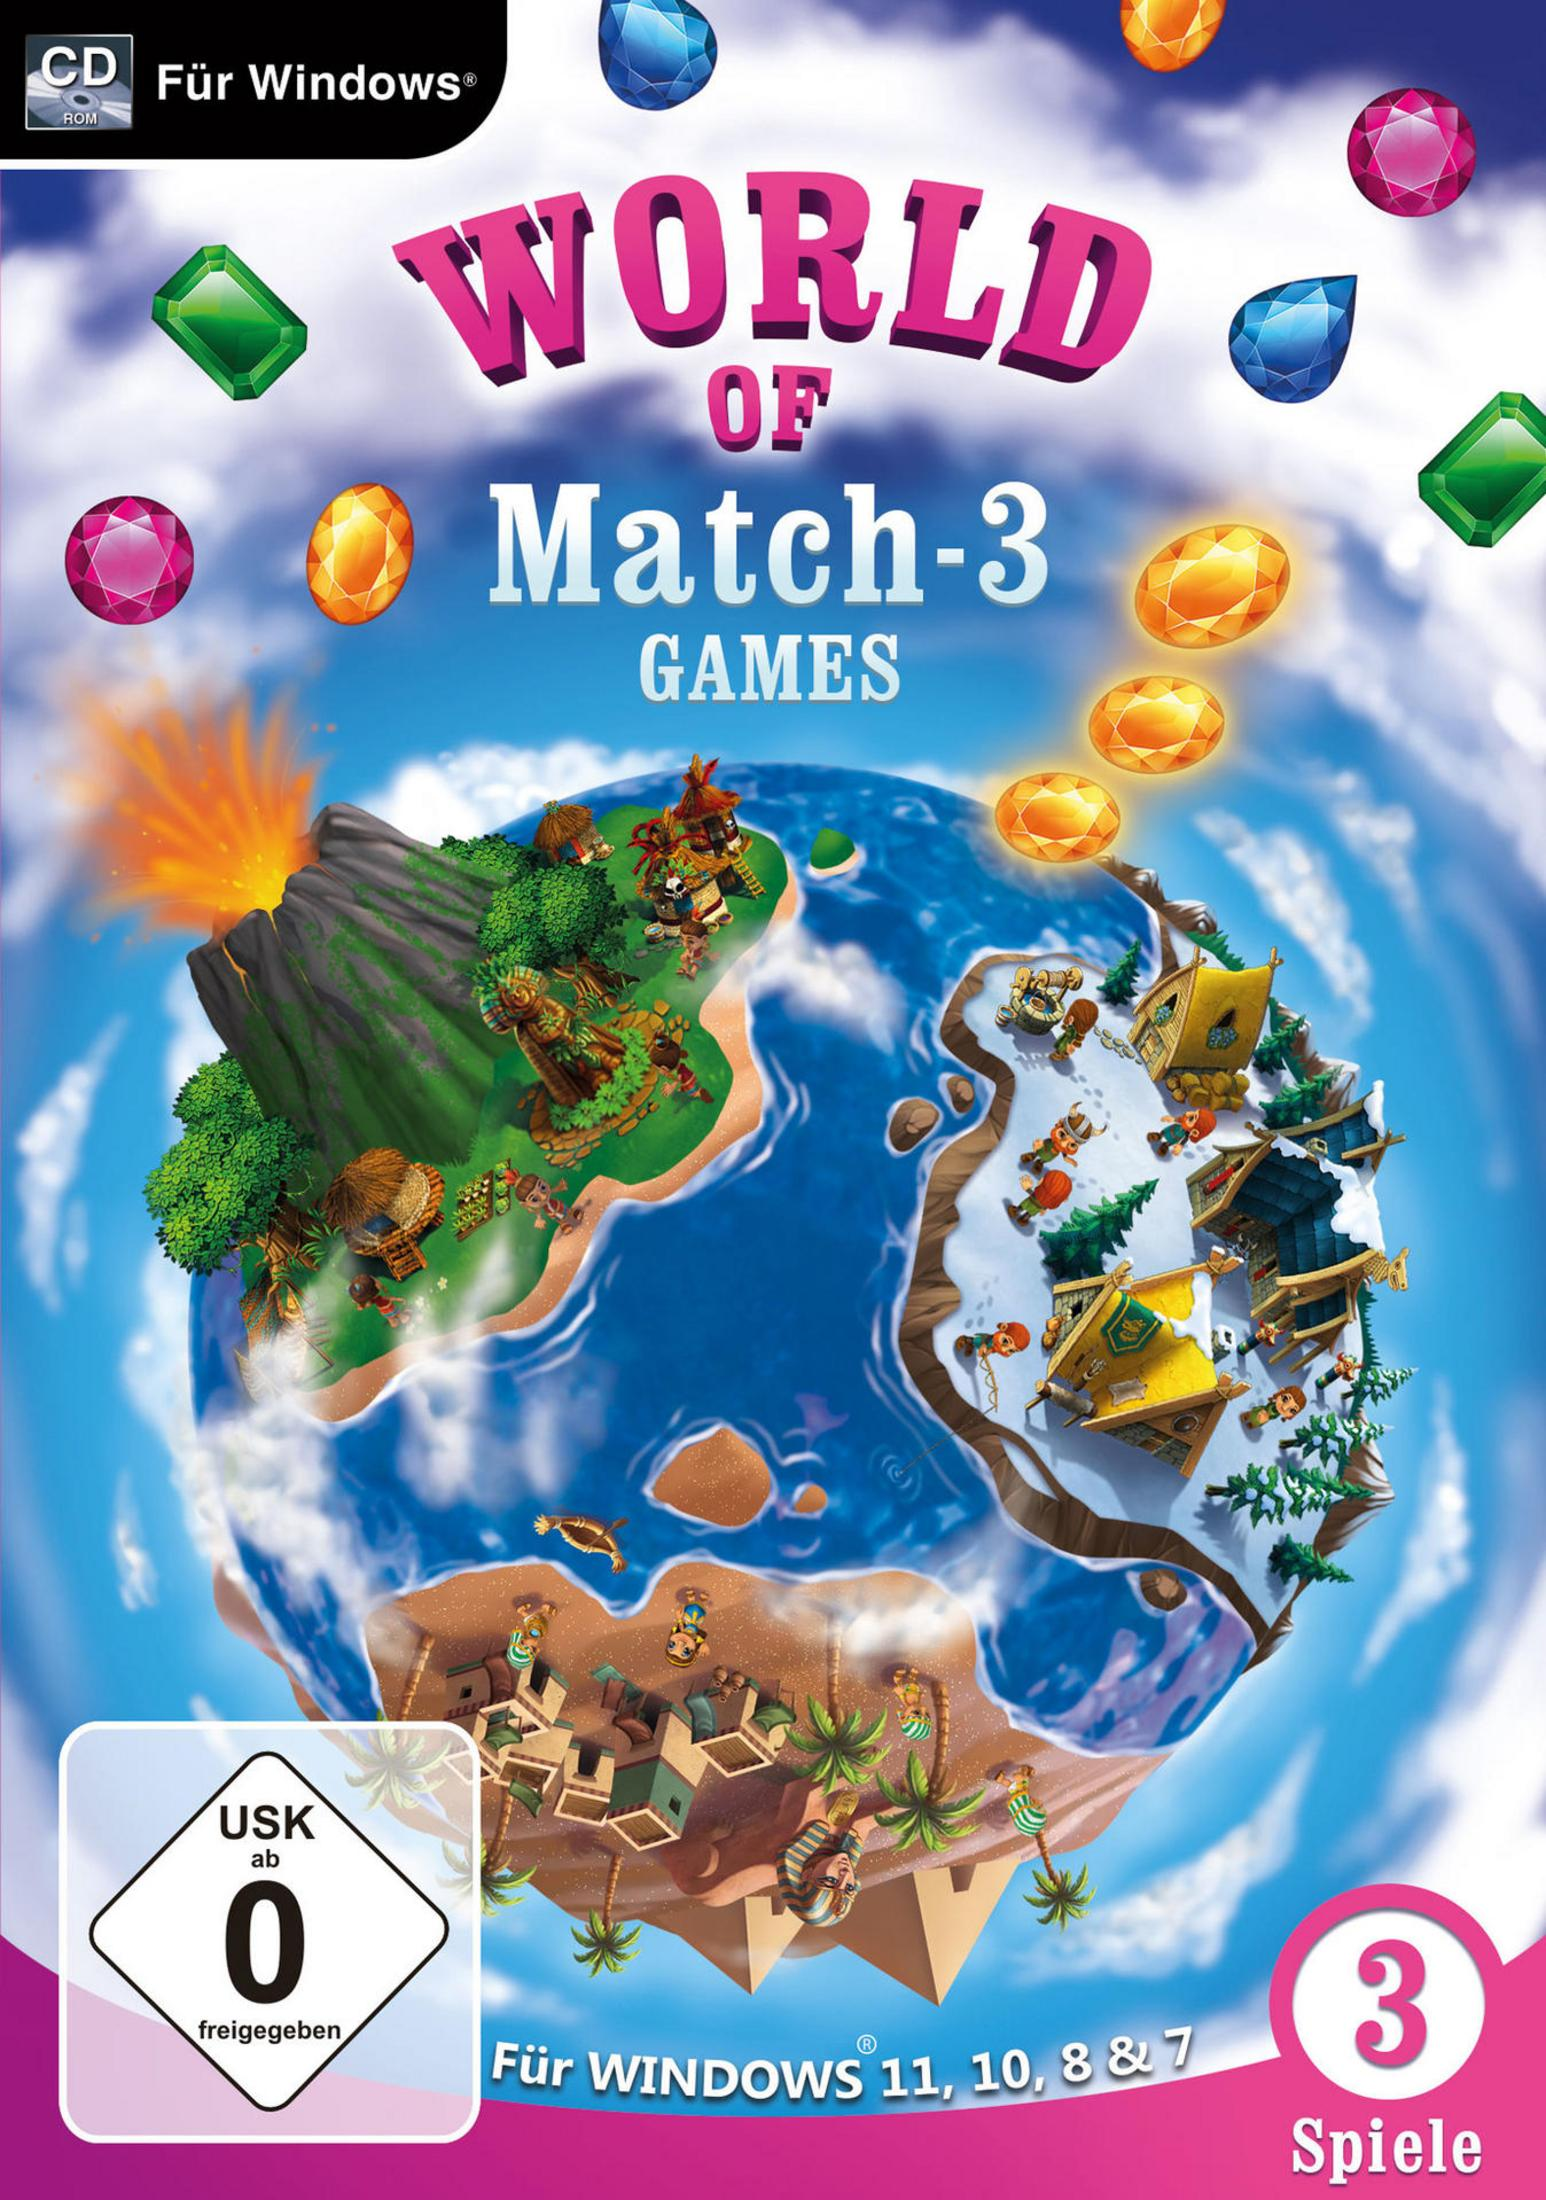 FÜR - WINDOWS11&10 [PC] OF MATCH WORLD GAMES 3